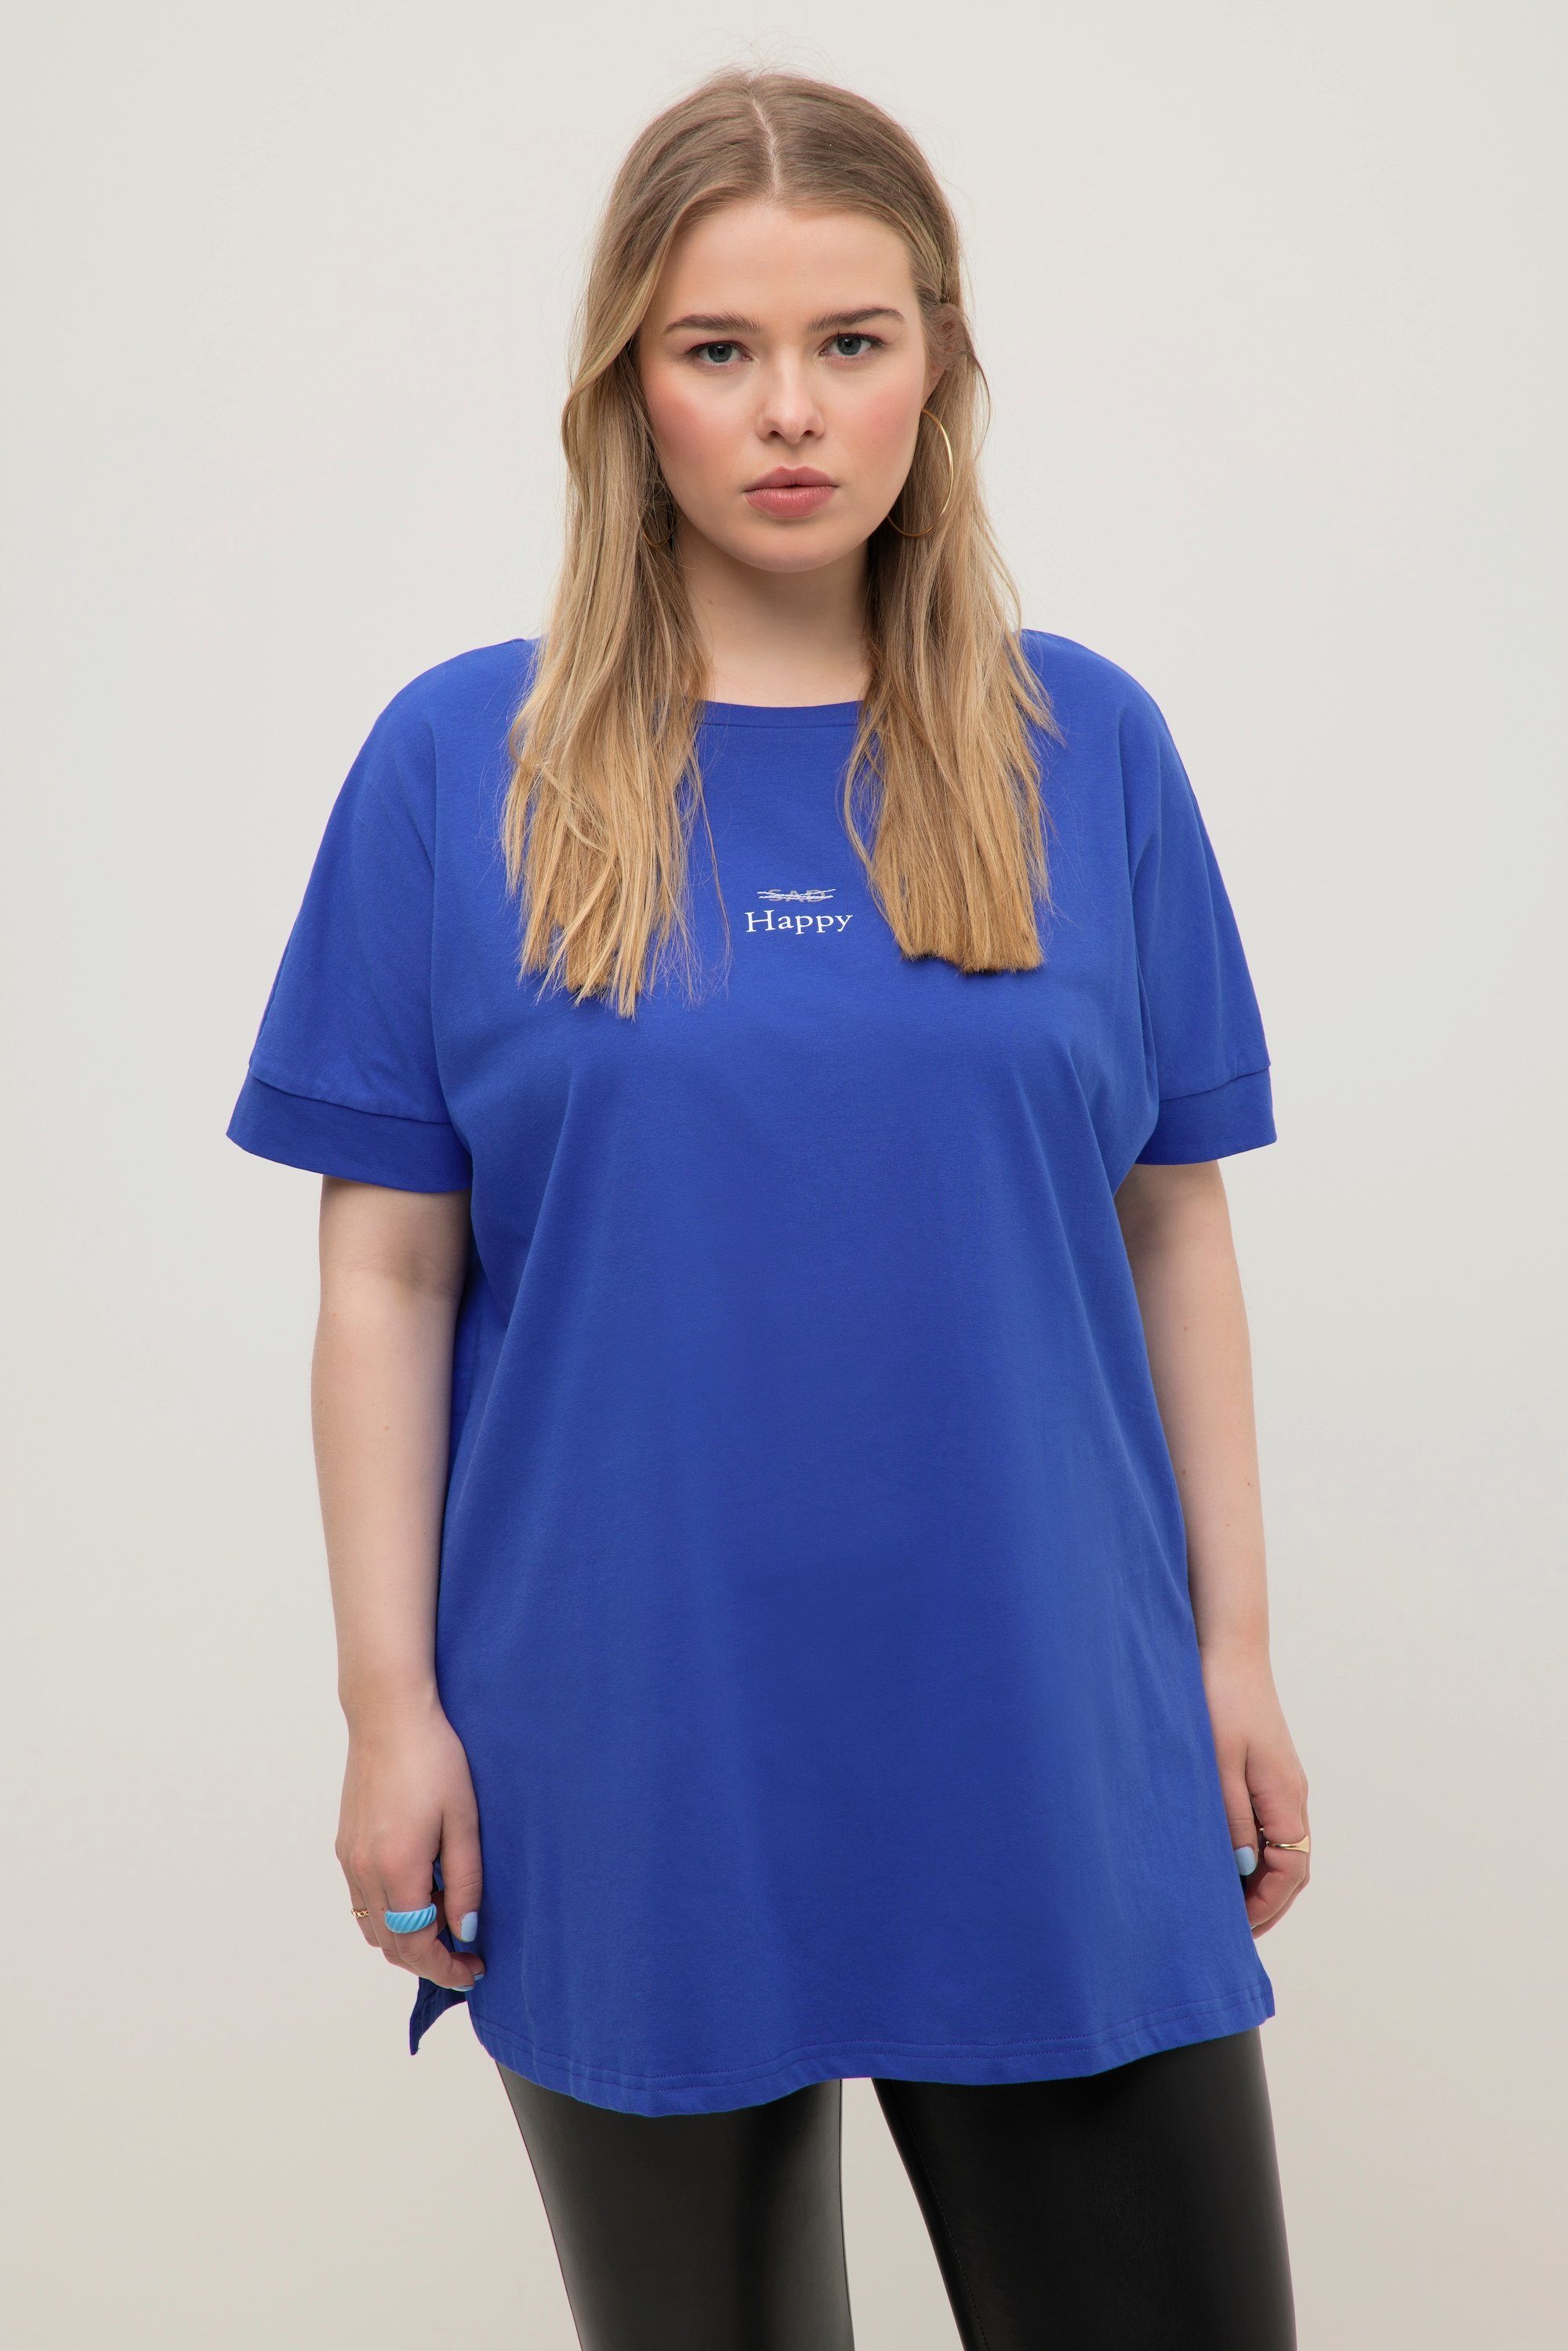 [Kauf es! ] Studio Untold Rundhals Print oversized azurblau Halbarm Statement T-Shirt Rundhalsshirt